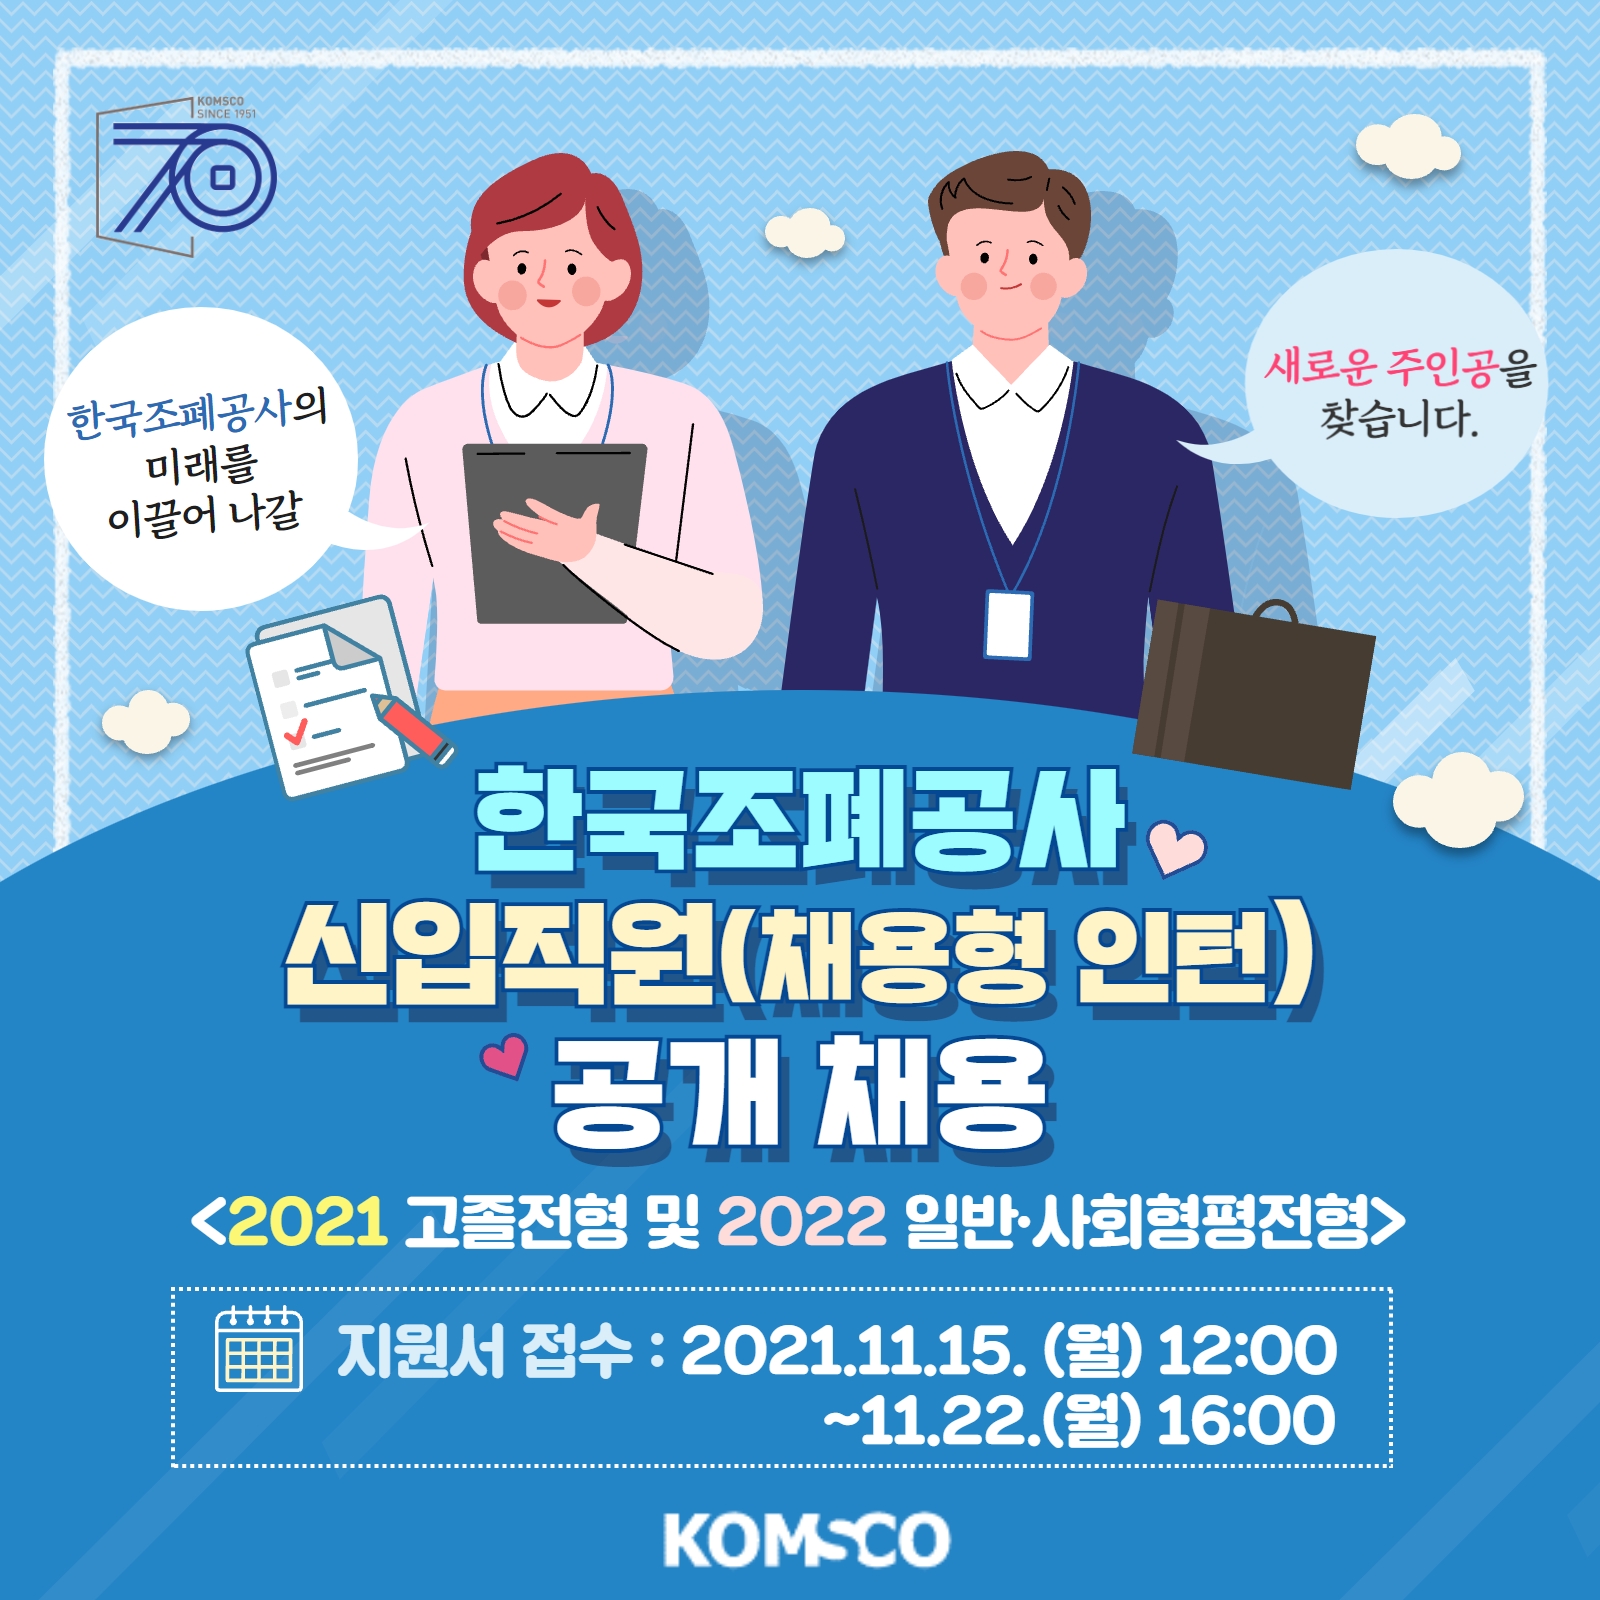 한국조폐공사의 미래를 이끌어 나갈 새로운 주인공을 찾습니다. 한국조폐공사 신입직원(채용형 인턴) 공개 채용 <2021 고졸전형 및 2022 일반·사회형평 전형> 지원서 접수 : 2021.11.15.(월) 12:00 ~ 11.22.(월) 16:00